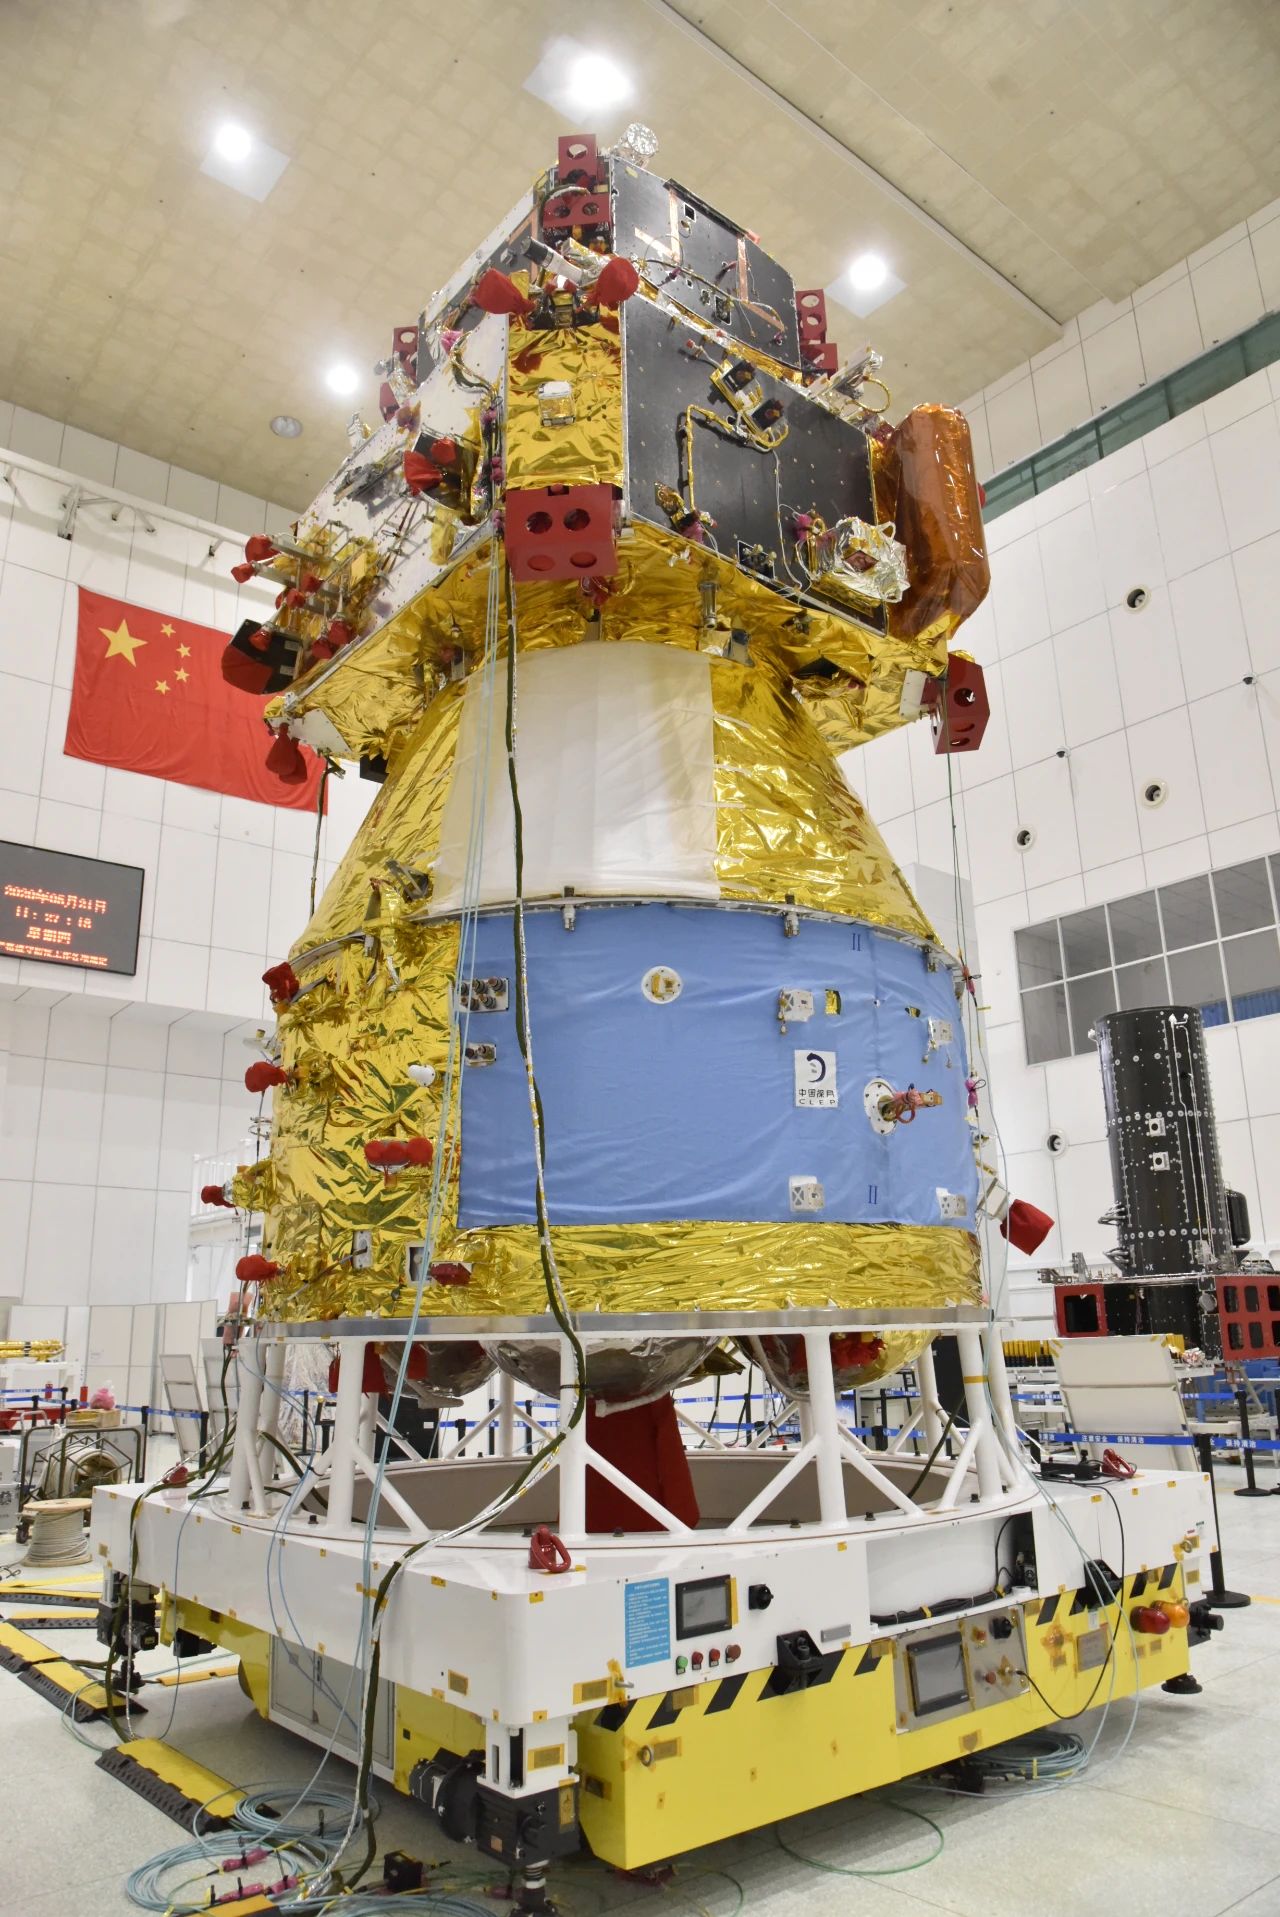 嫦娥五号在测试中。图/中国航天科技集团